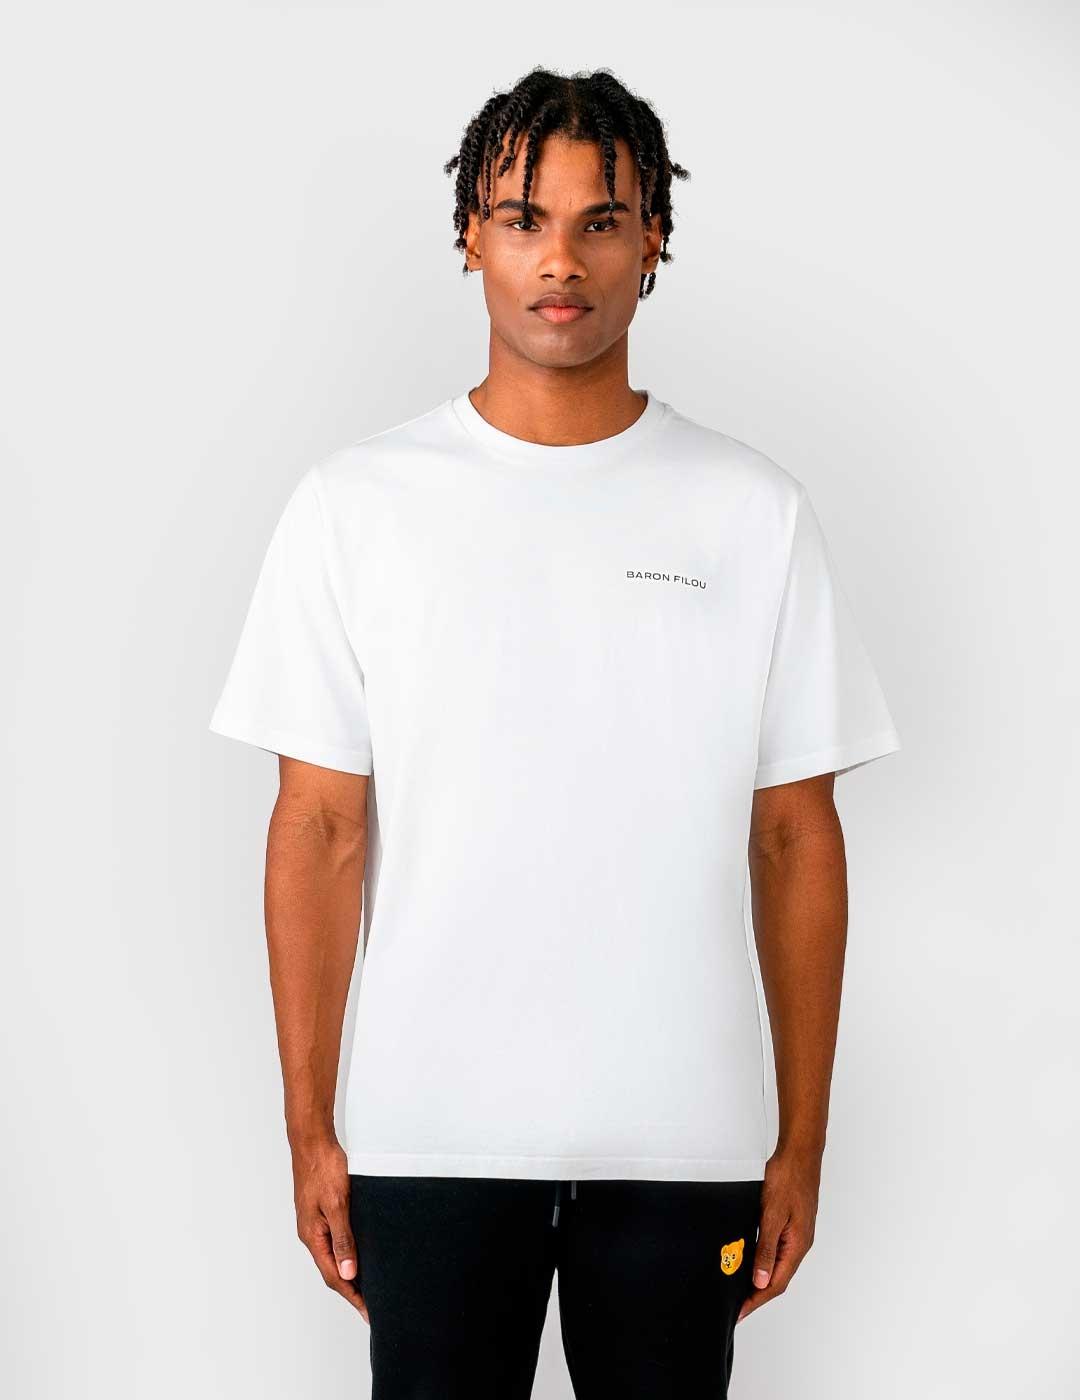 Camiseta Baron Filou LXXIV blanca para hombre y mujer